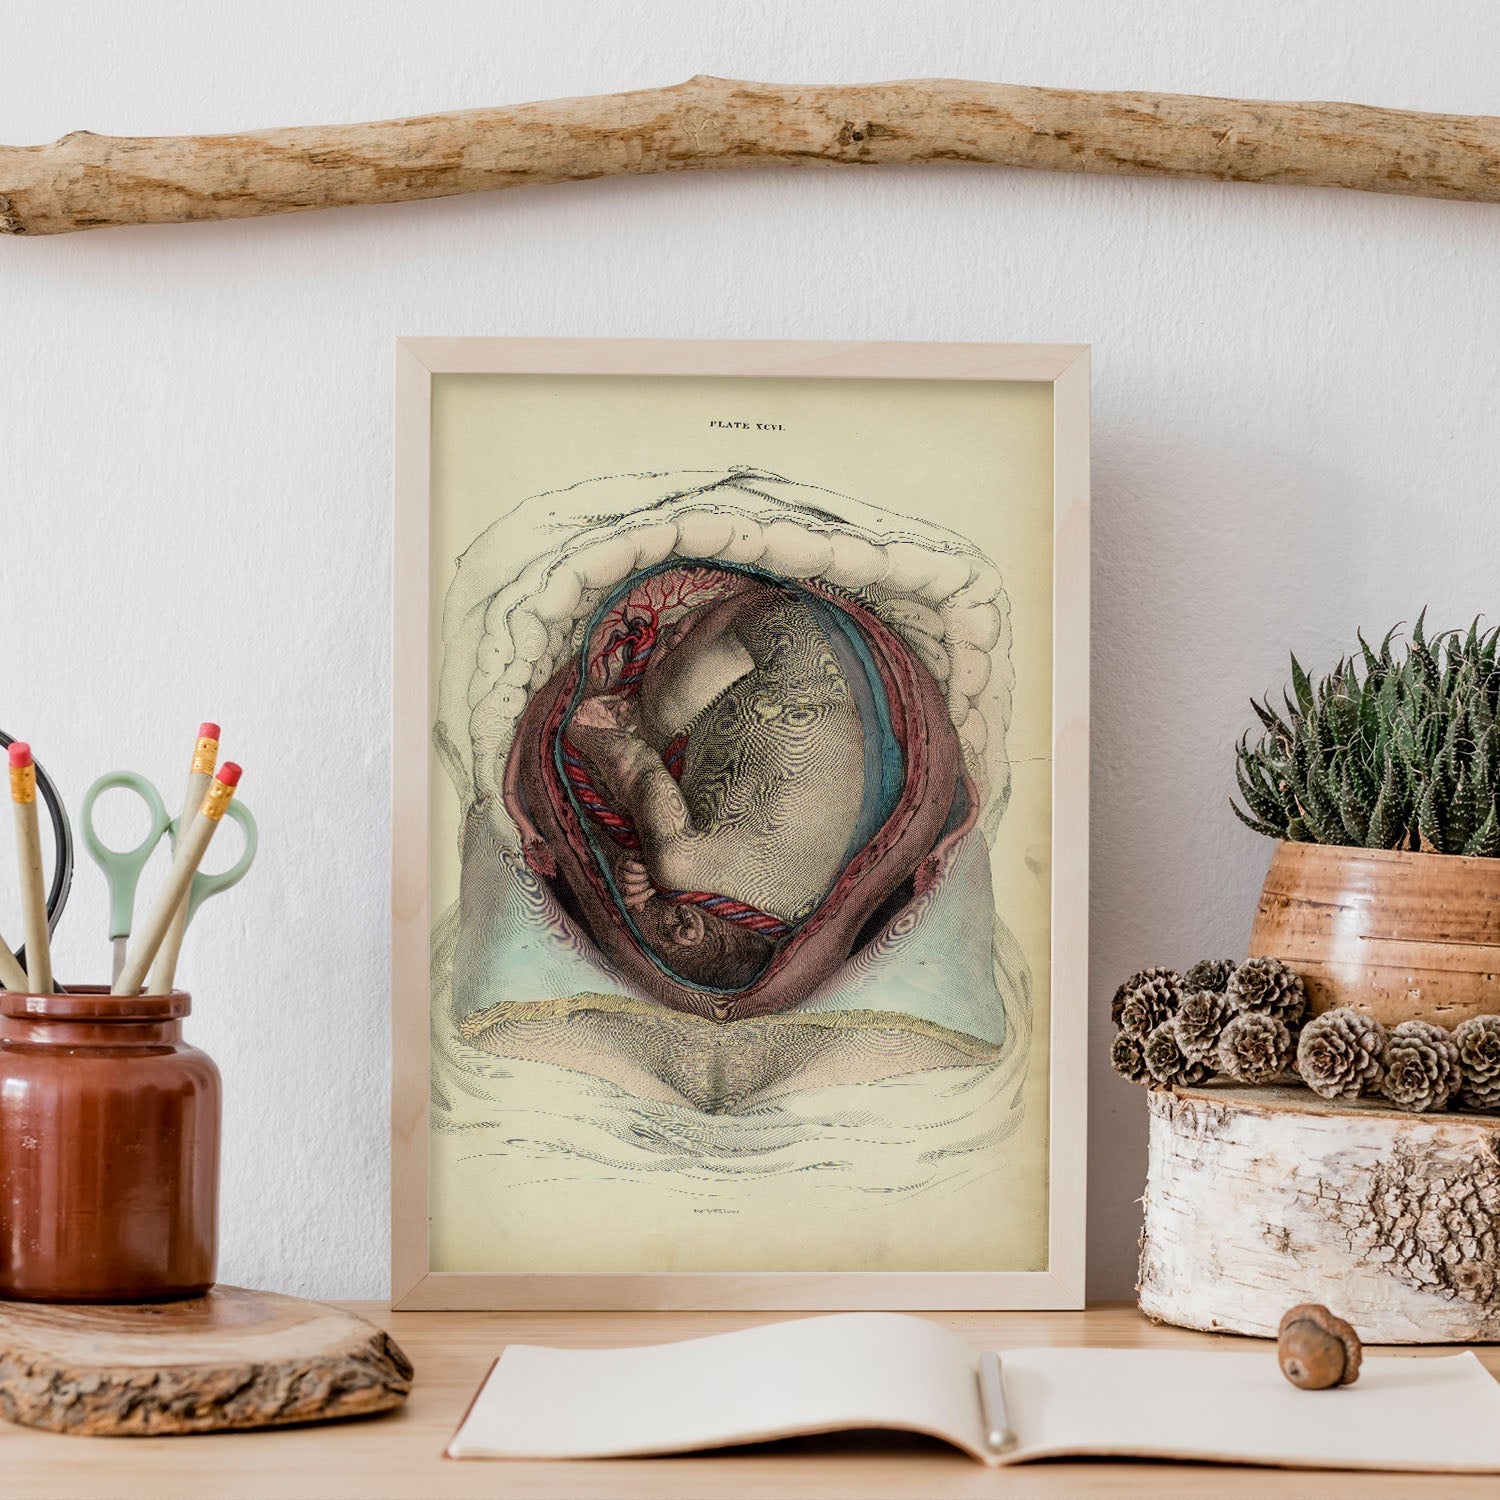 Gravid uterus with fetus-Artwork-Nacnic-Nacnic Estudio SL